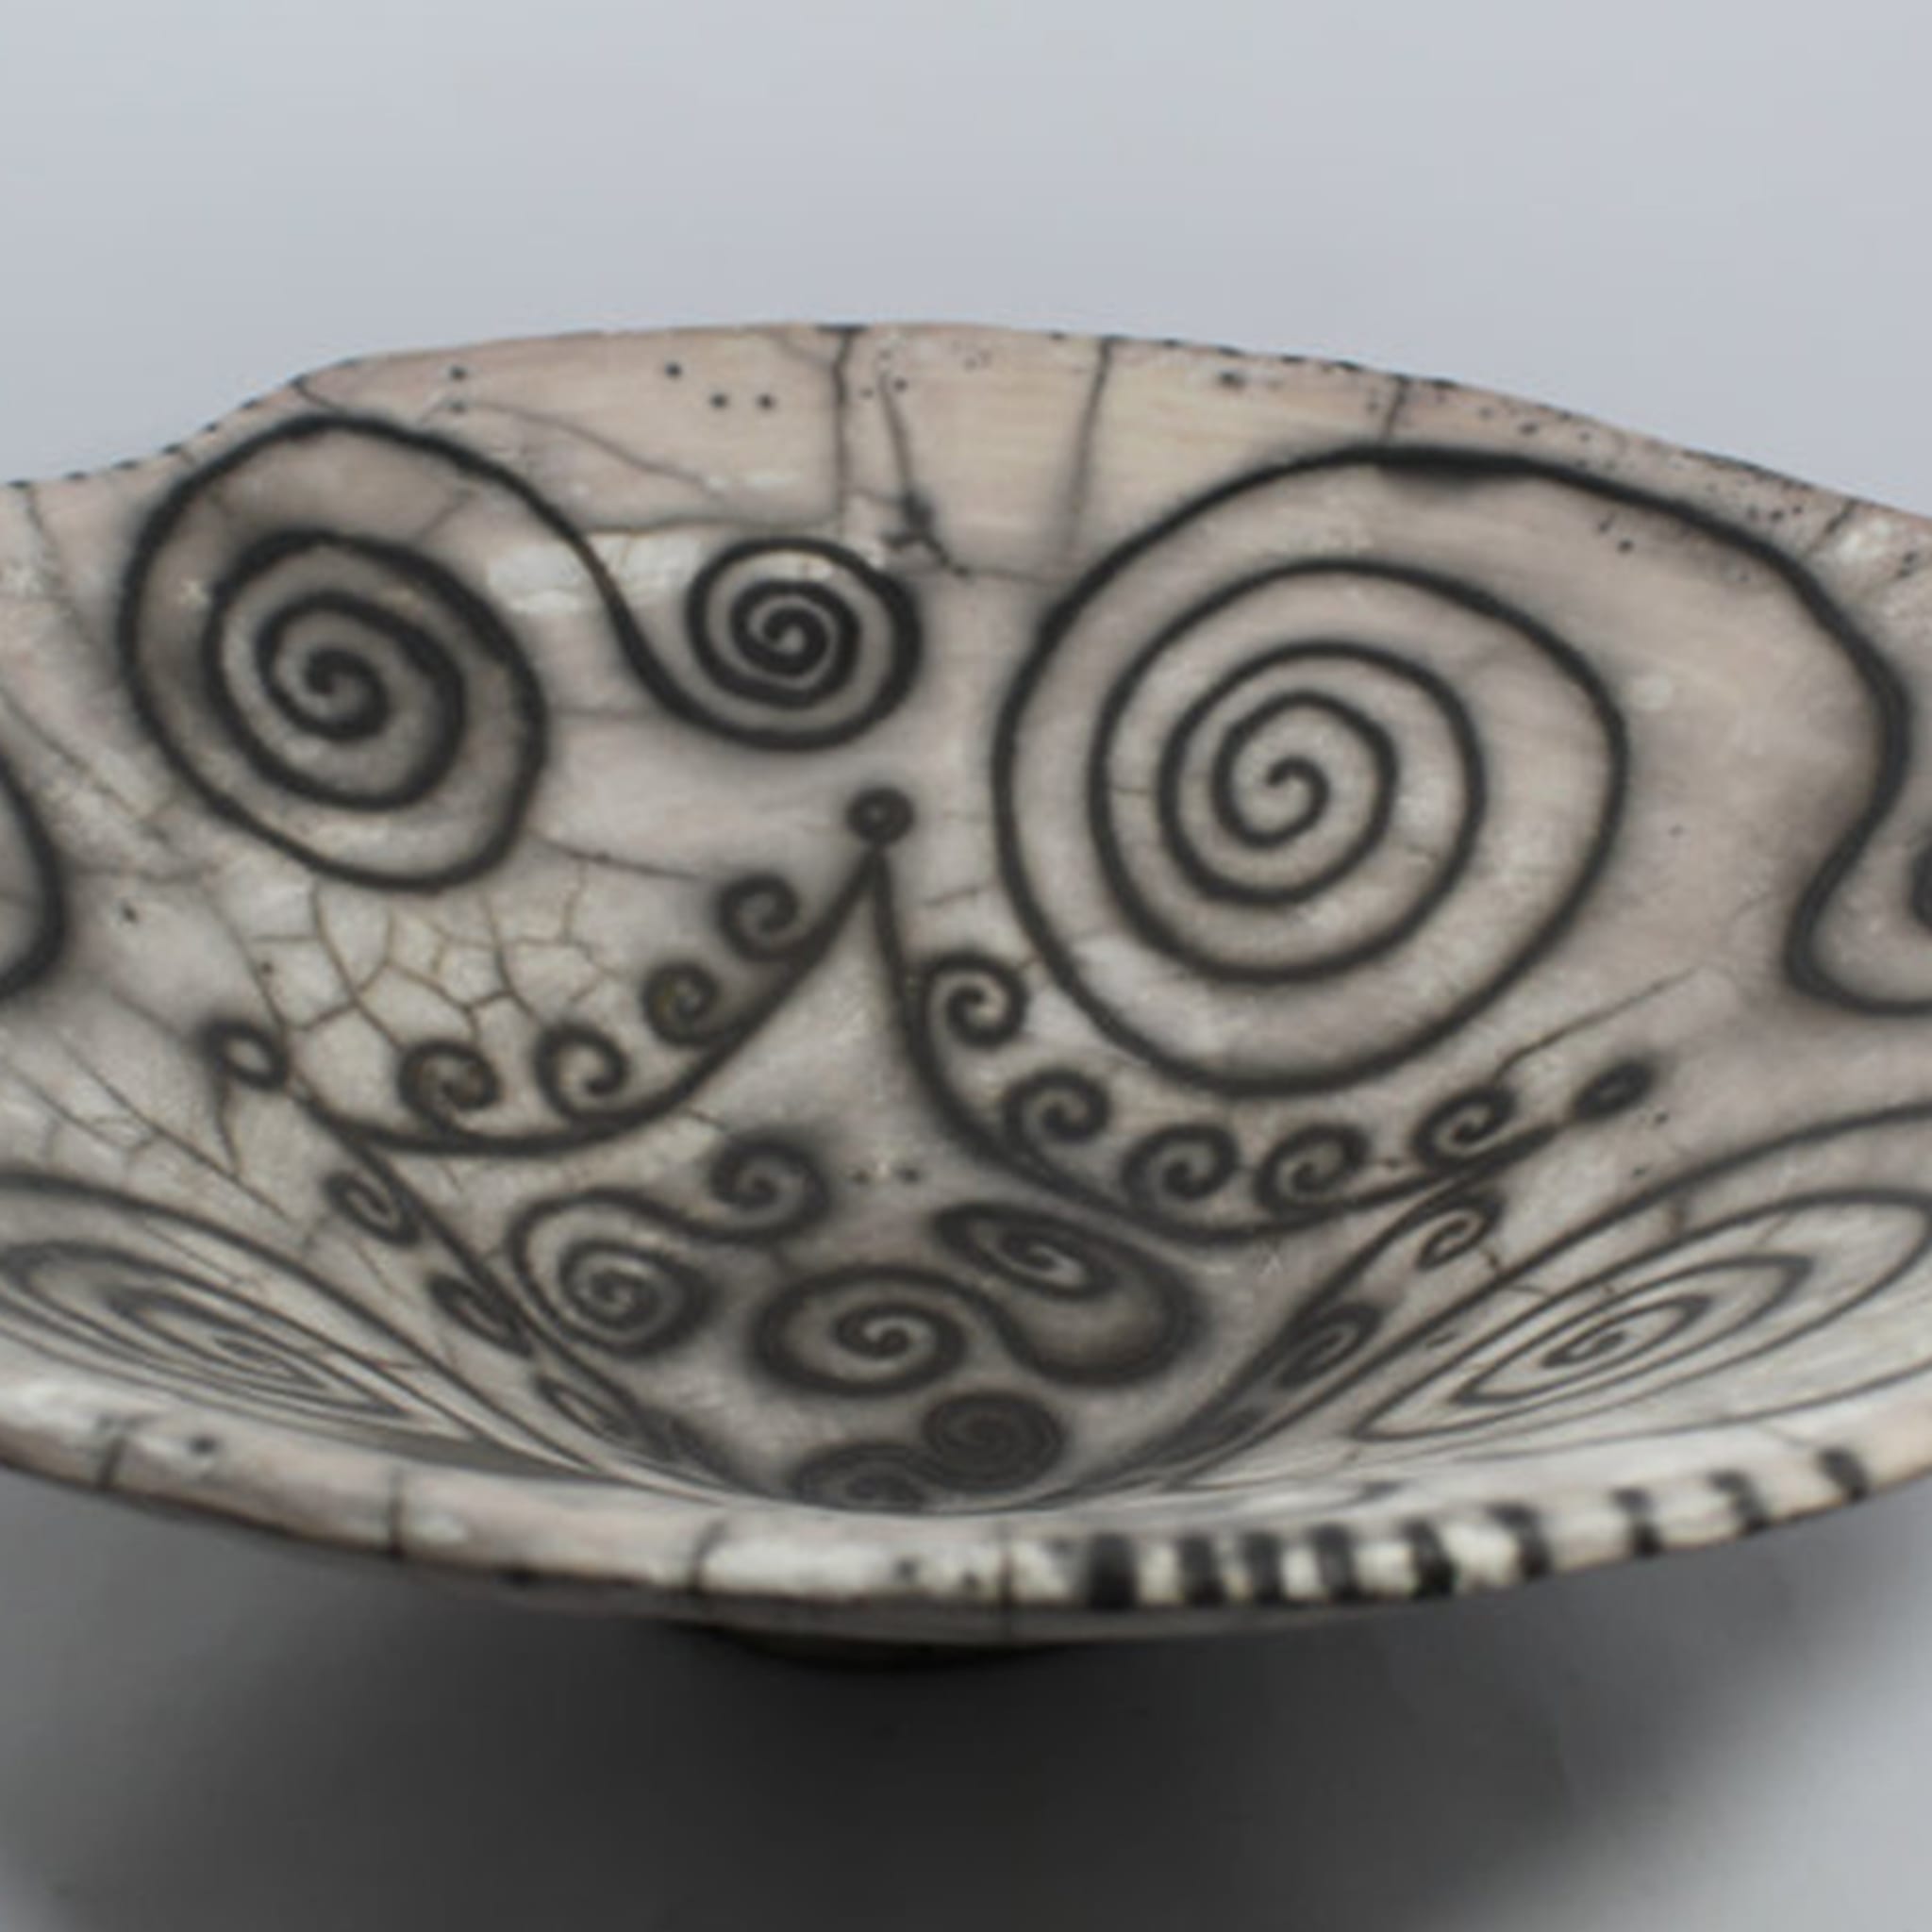 David ceramic bowl - Alternative view 4